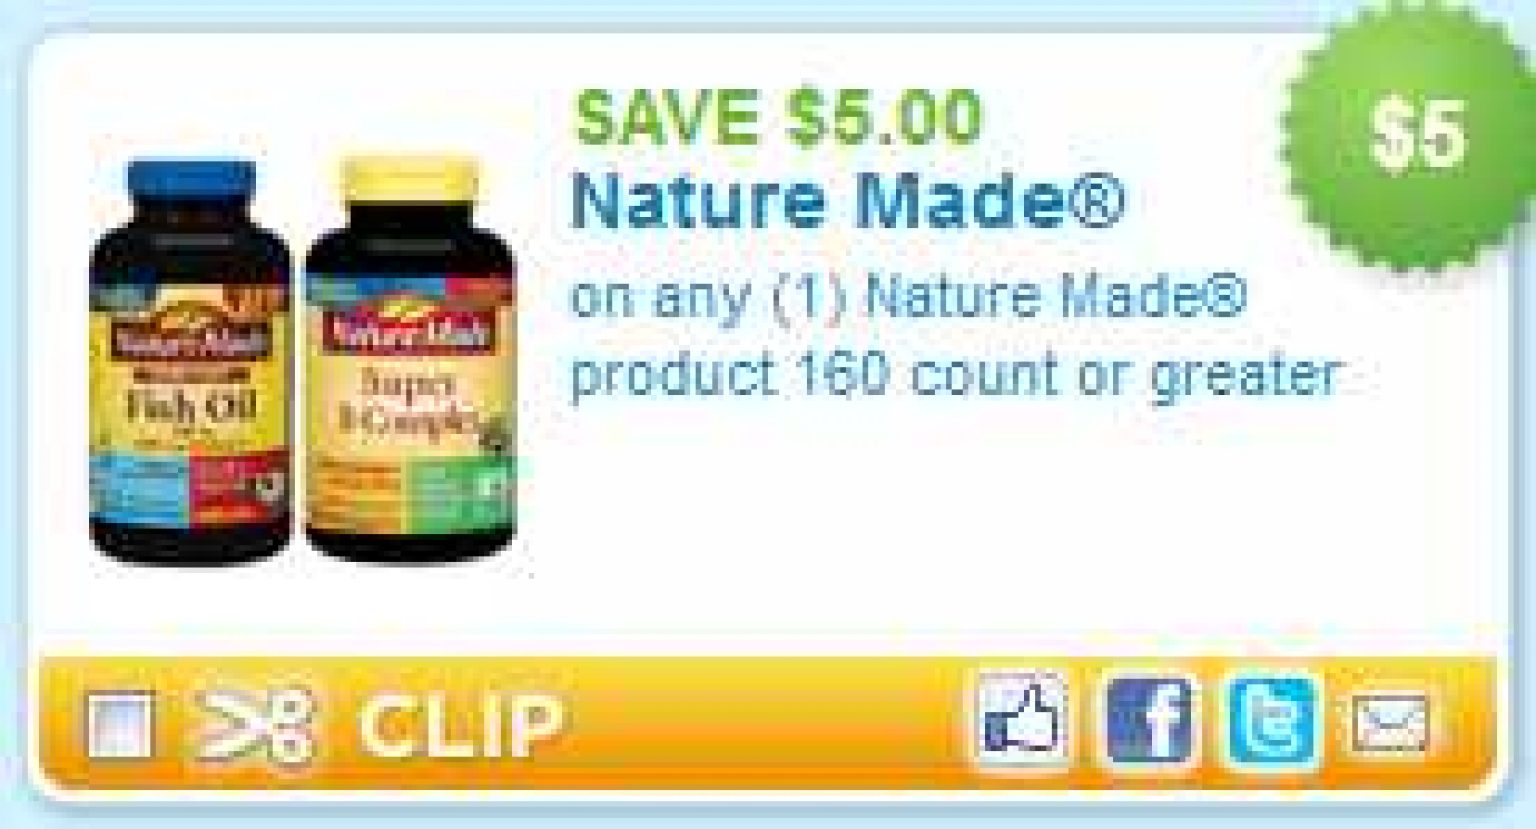 5-off-nature-made-printable-coupon-2-free-at-walgreens